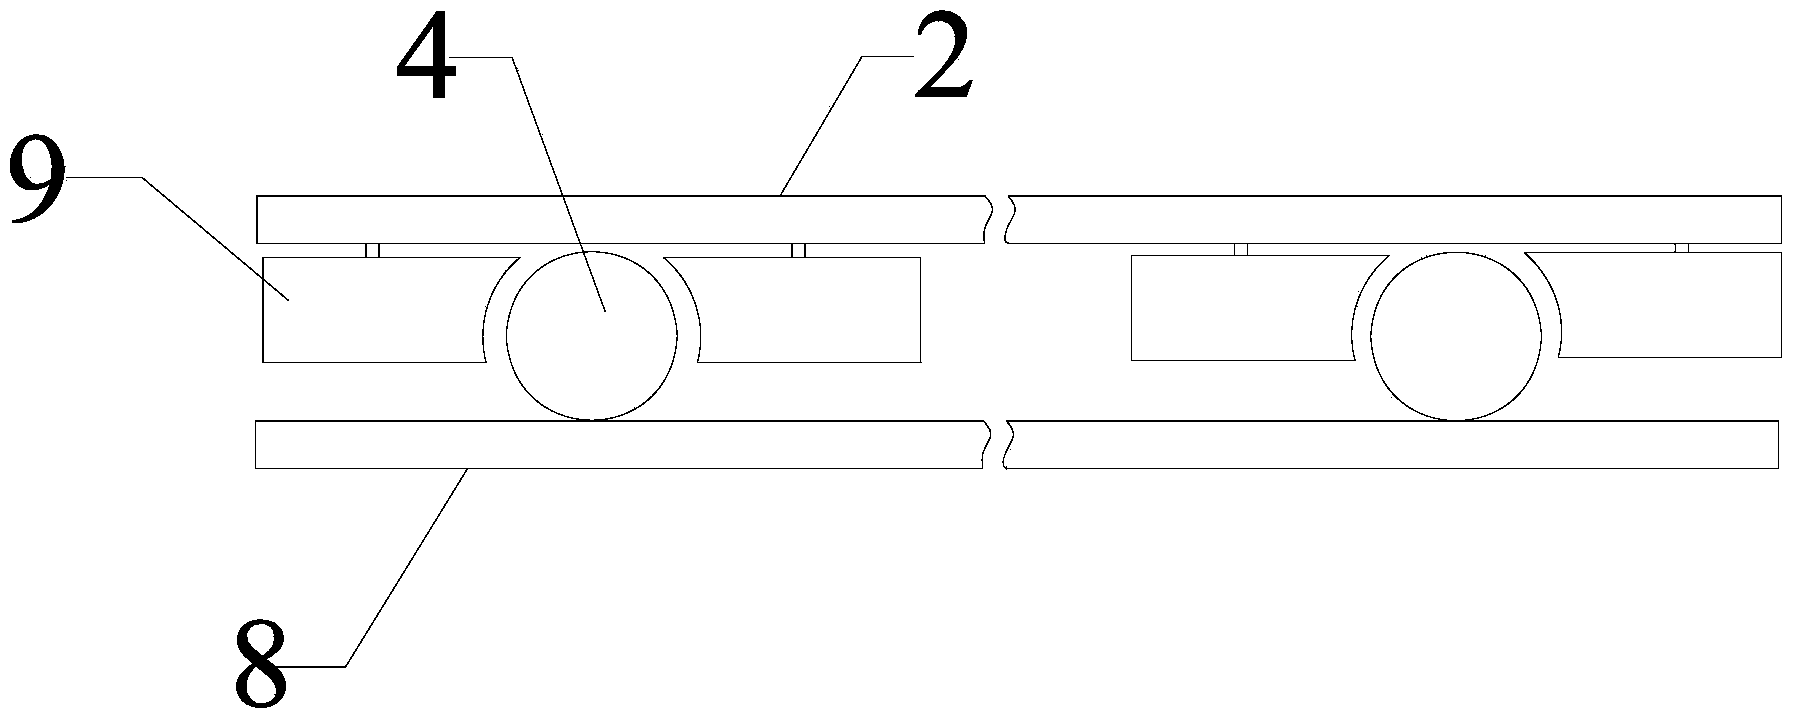 Magnetic repulsion type ball holding rolling door/window